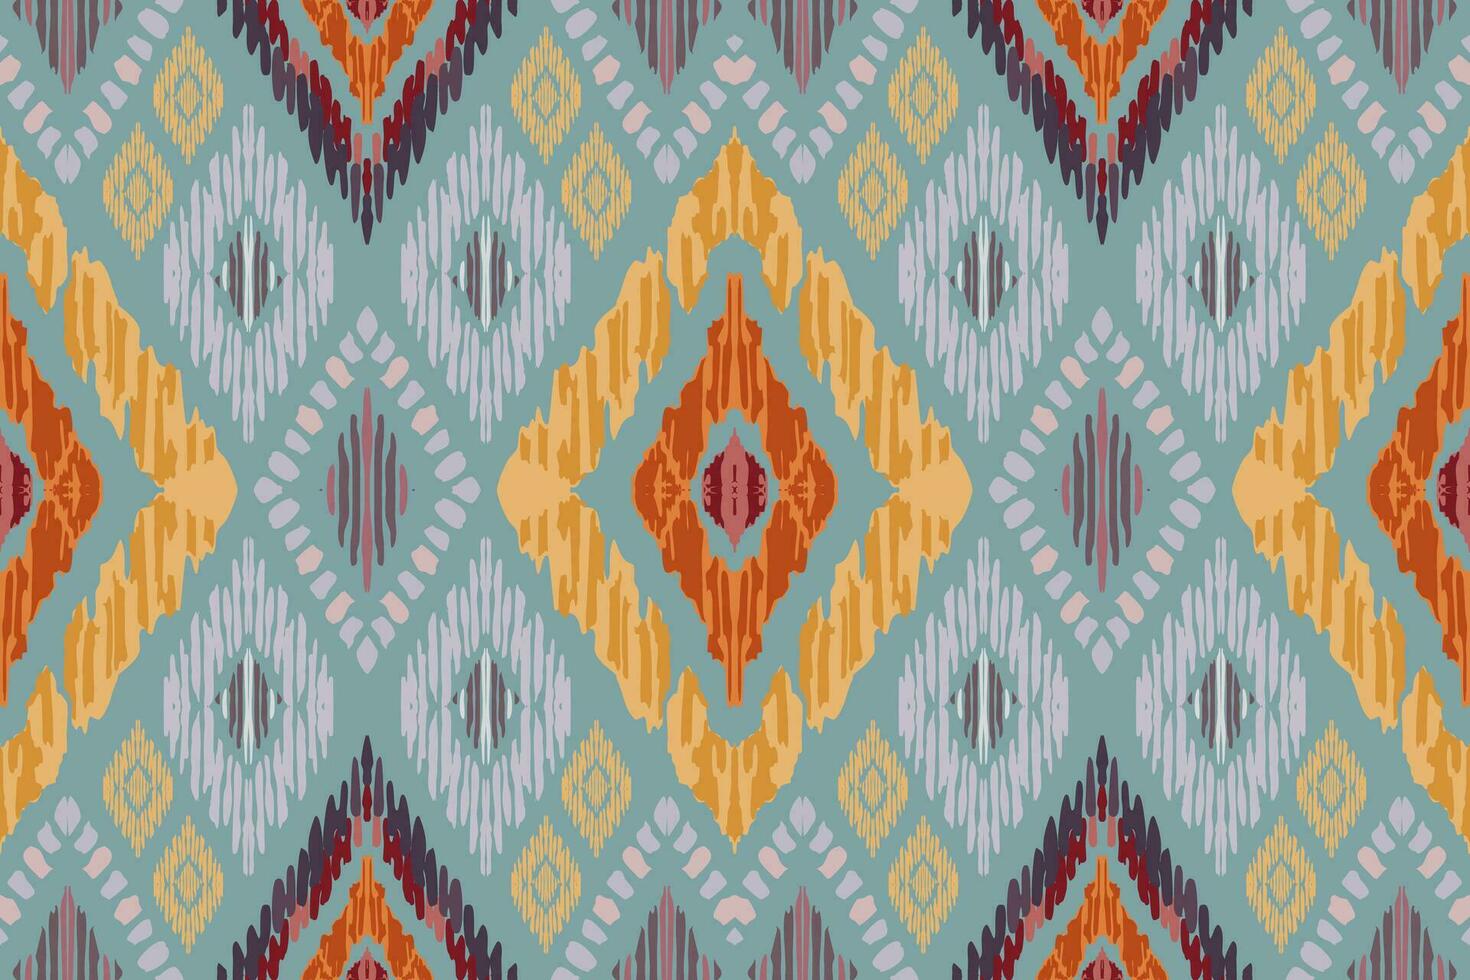 broderie ikat paisley sur fond gris. motif géométrique oriental ethnique traditionnel. illustration vectorielle abstraite de style aztèque. conception pour la texture, le tissu, les vêtements, l'emballage, le tapis, l'impression. vecteur